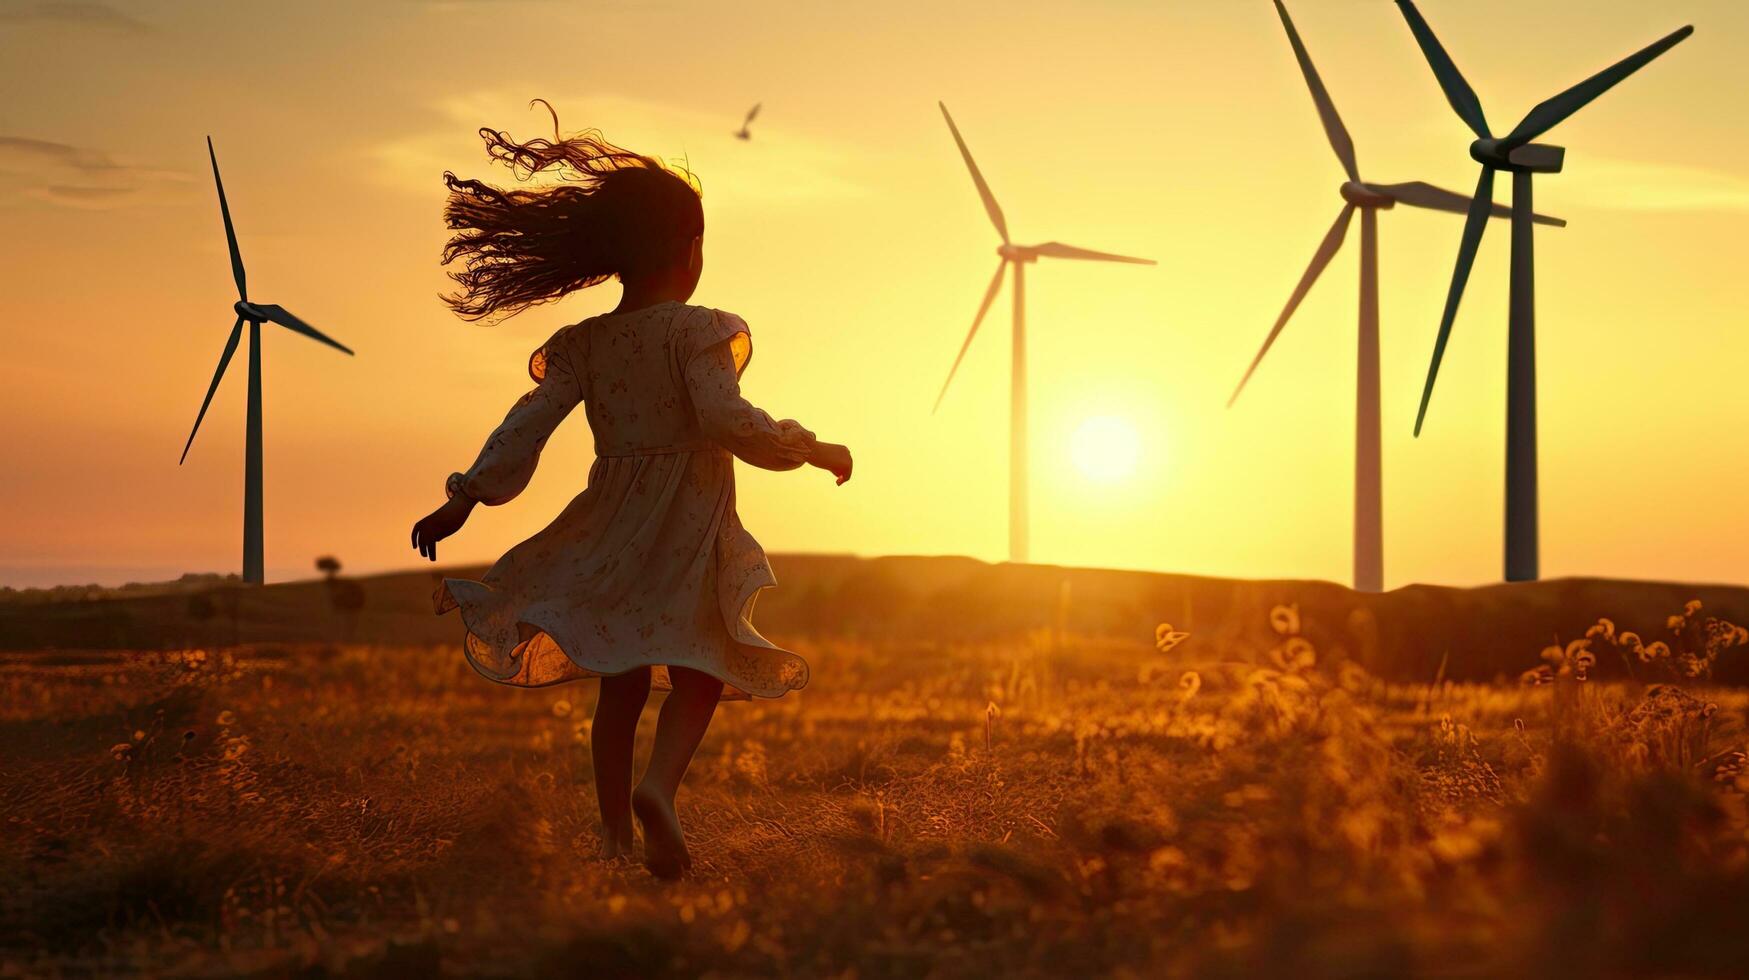 kind meisje met wind speelgoed- rennen Aan weide Bij zonsondergang haar silhouet foto